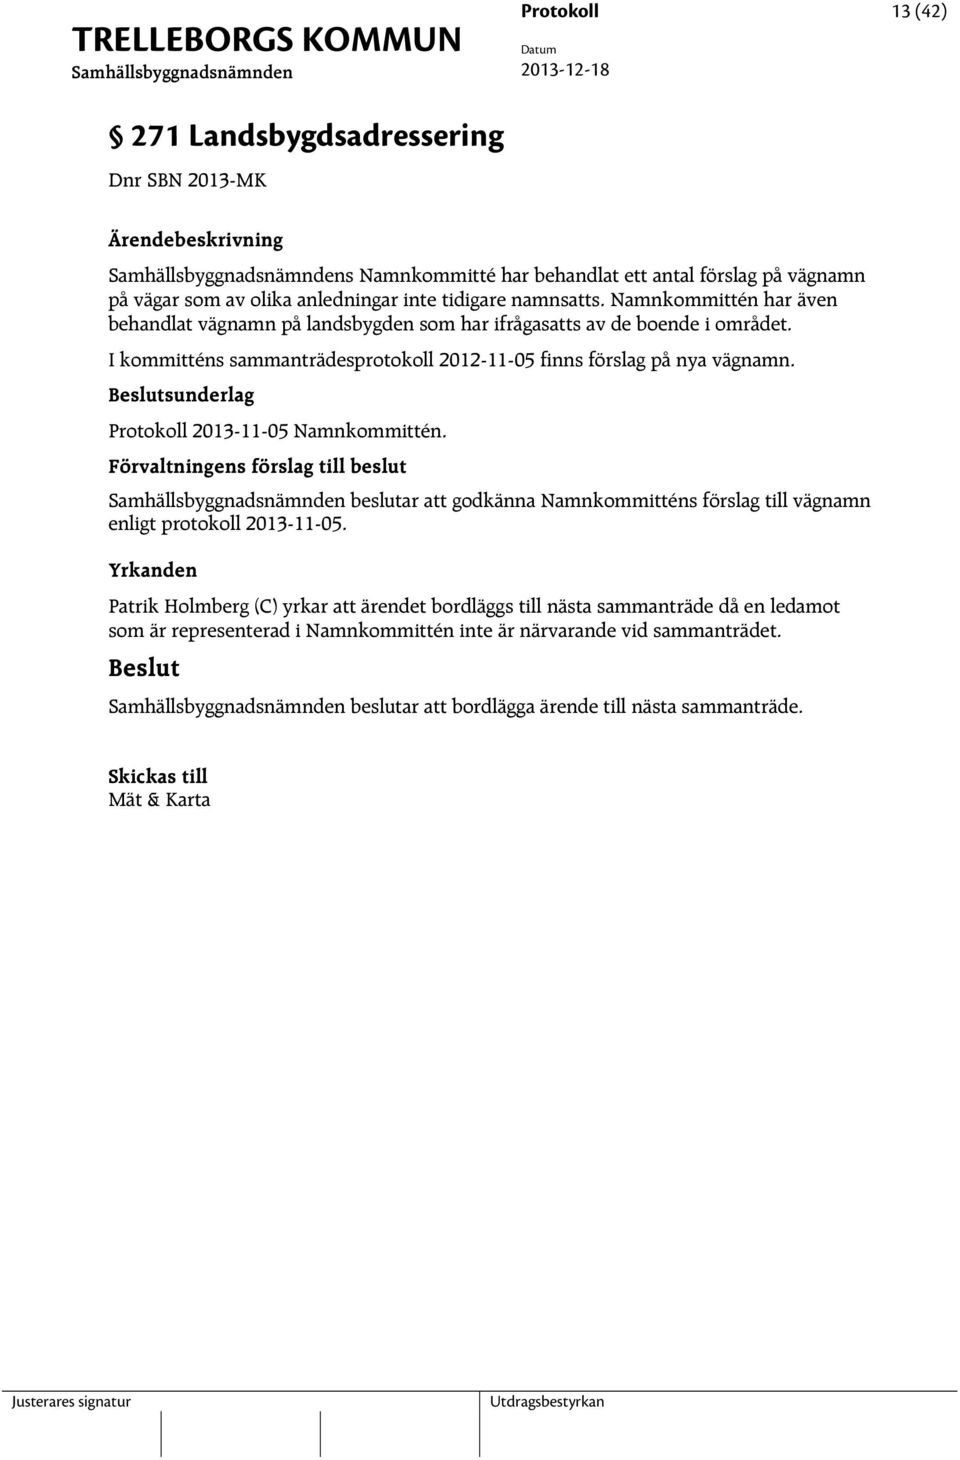 sunderlag Protokoll 2013-11-05 Namnkommittén. beslutar att godkänna Namnkommitténs förslag till vägnamn enligt protokoll 2013-11-05.